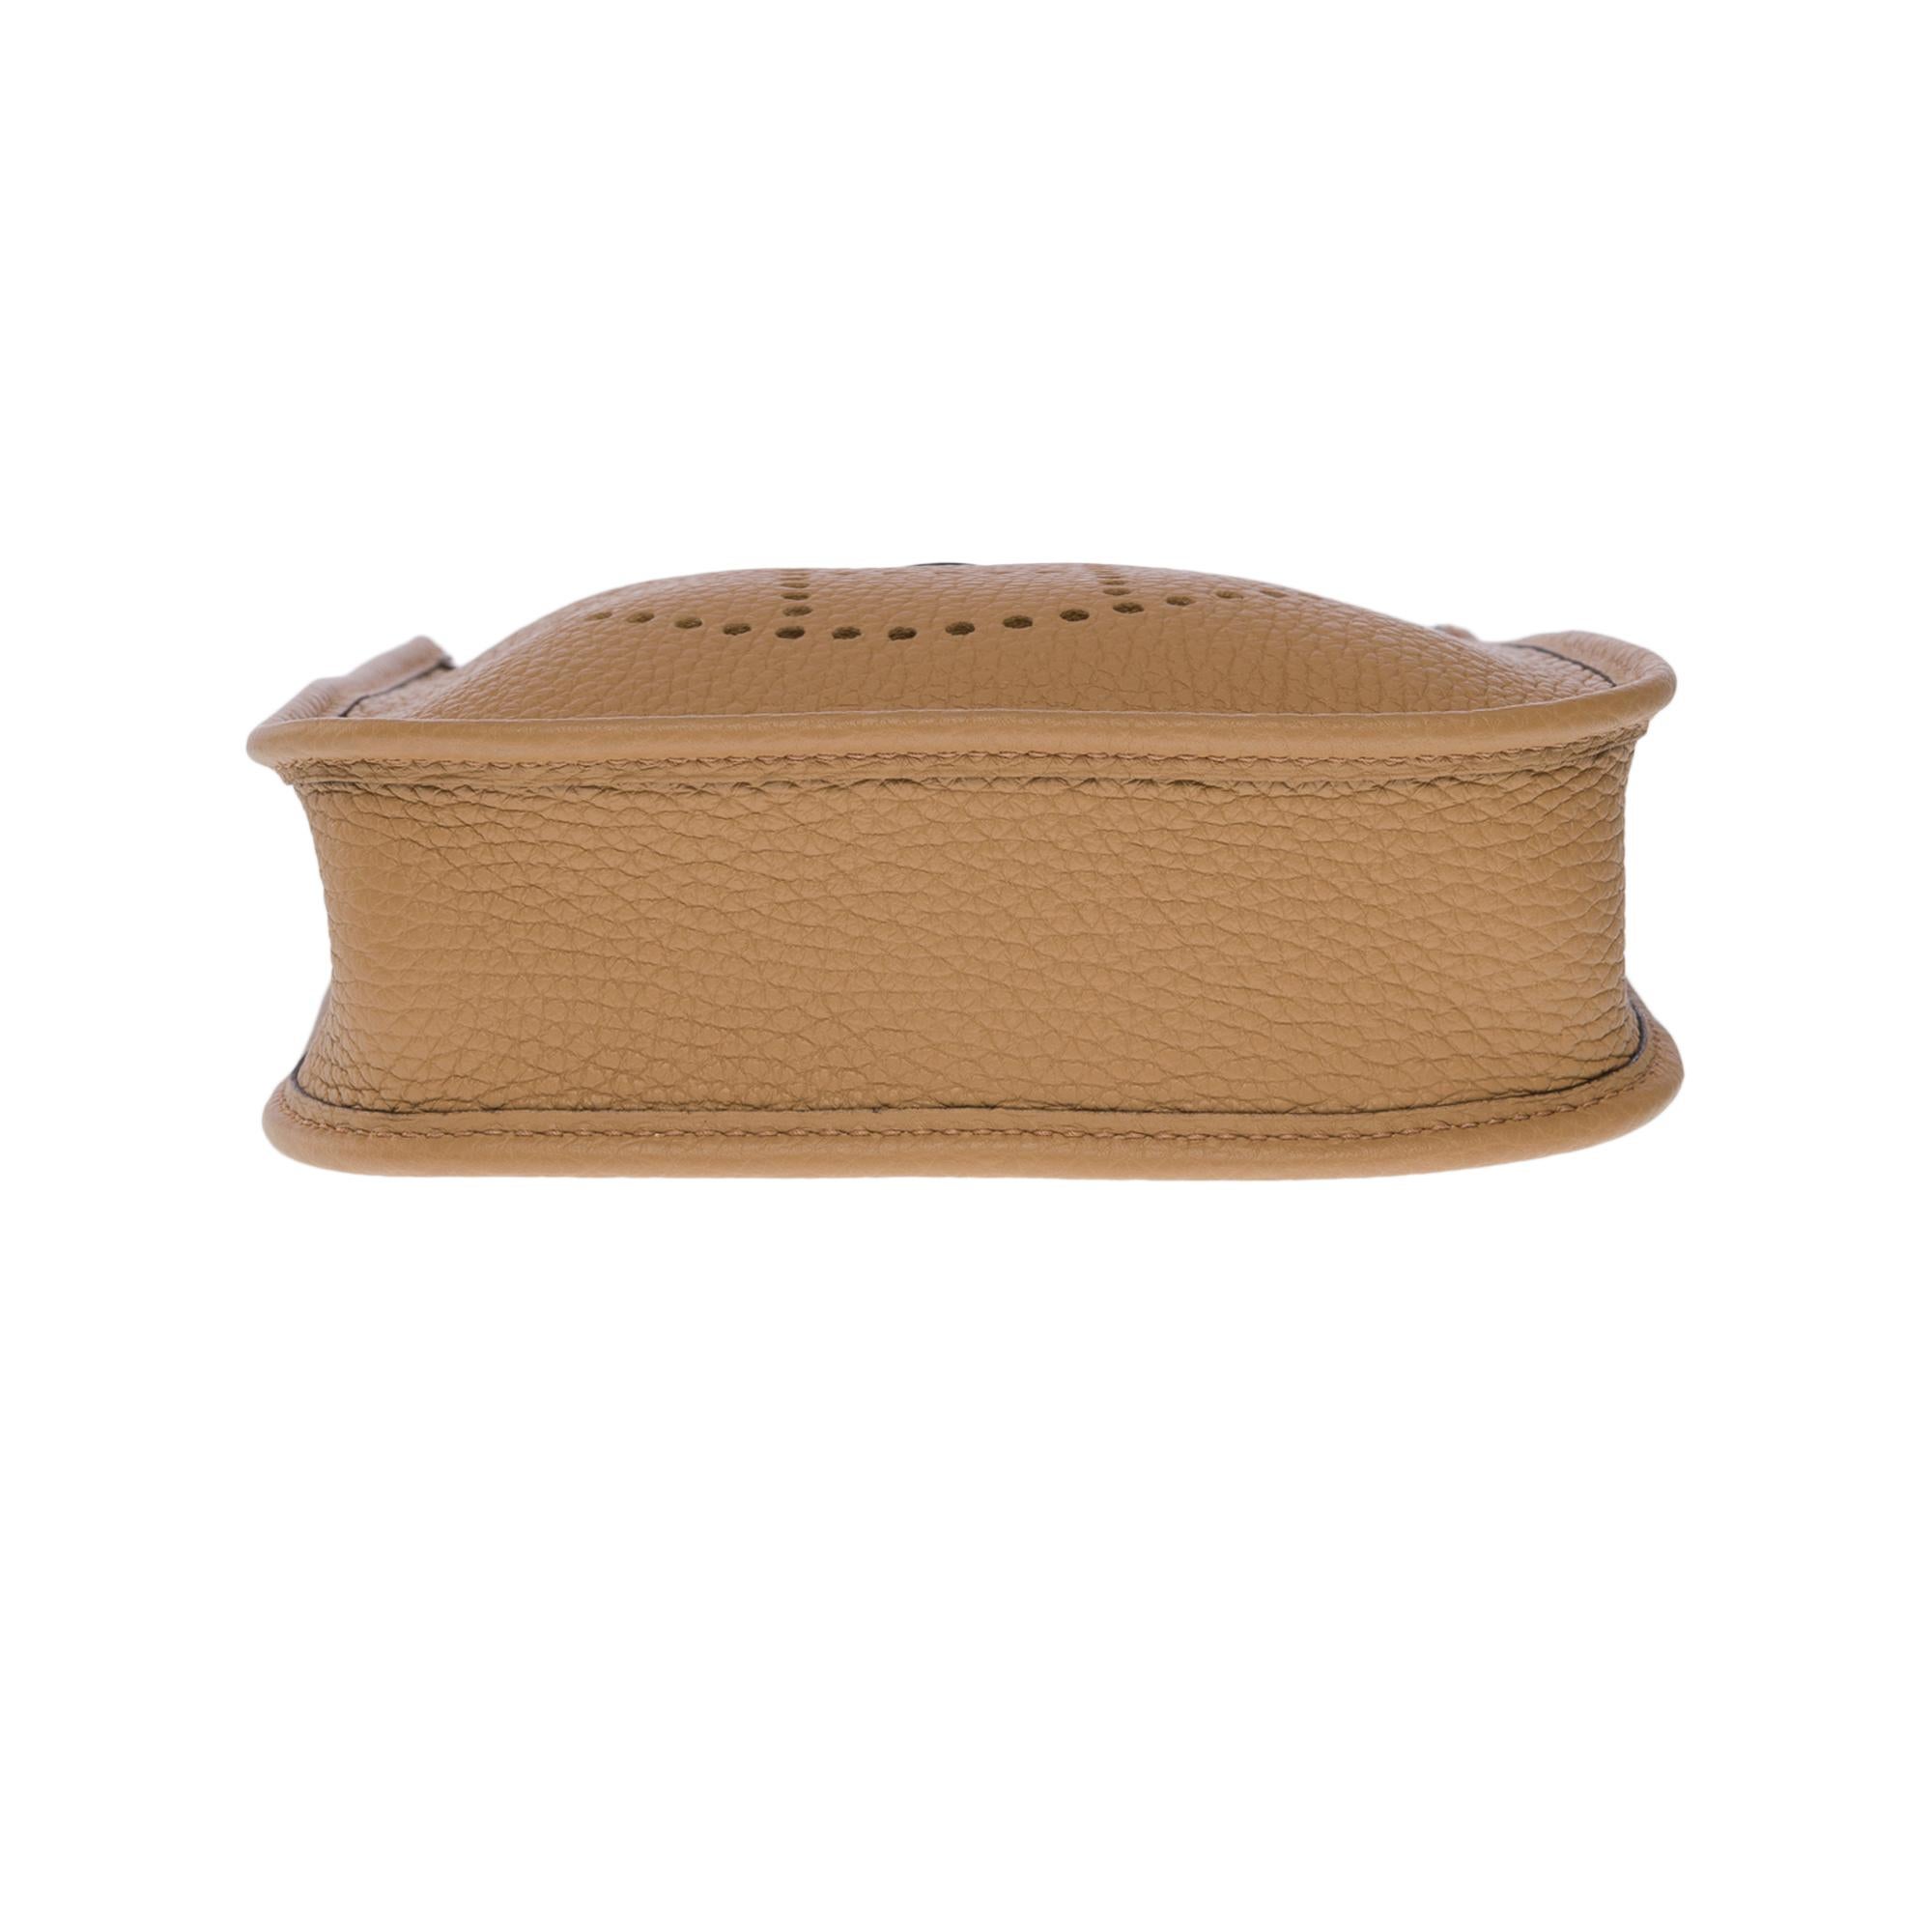 New Hermès Evelyne TPM shoulder bag in beige Taurillon Clemence leather, SHW 5